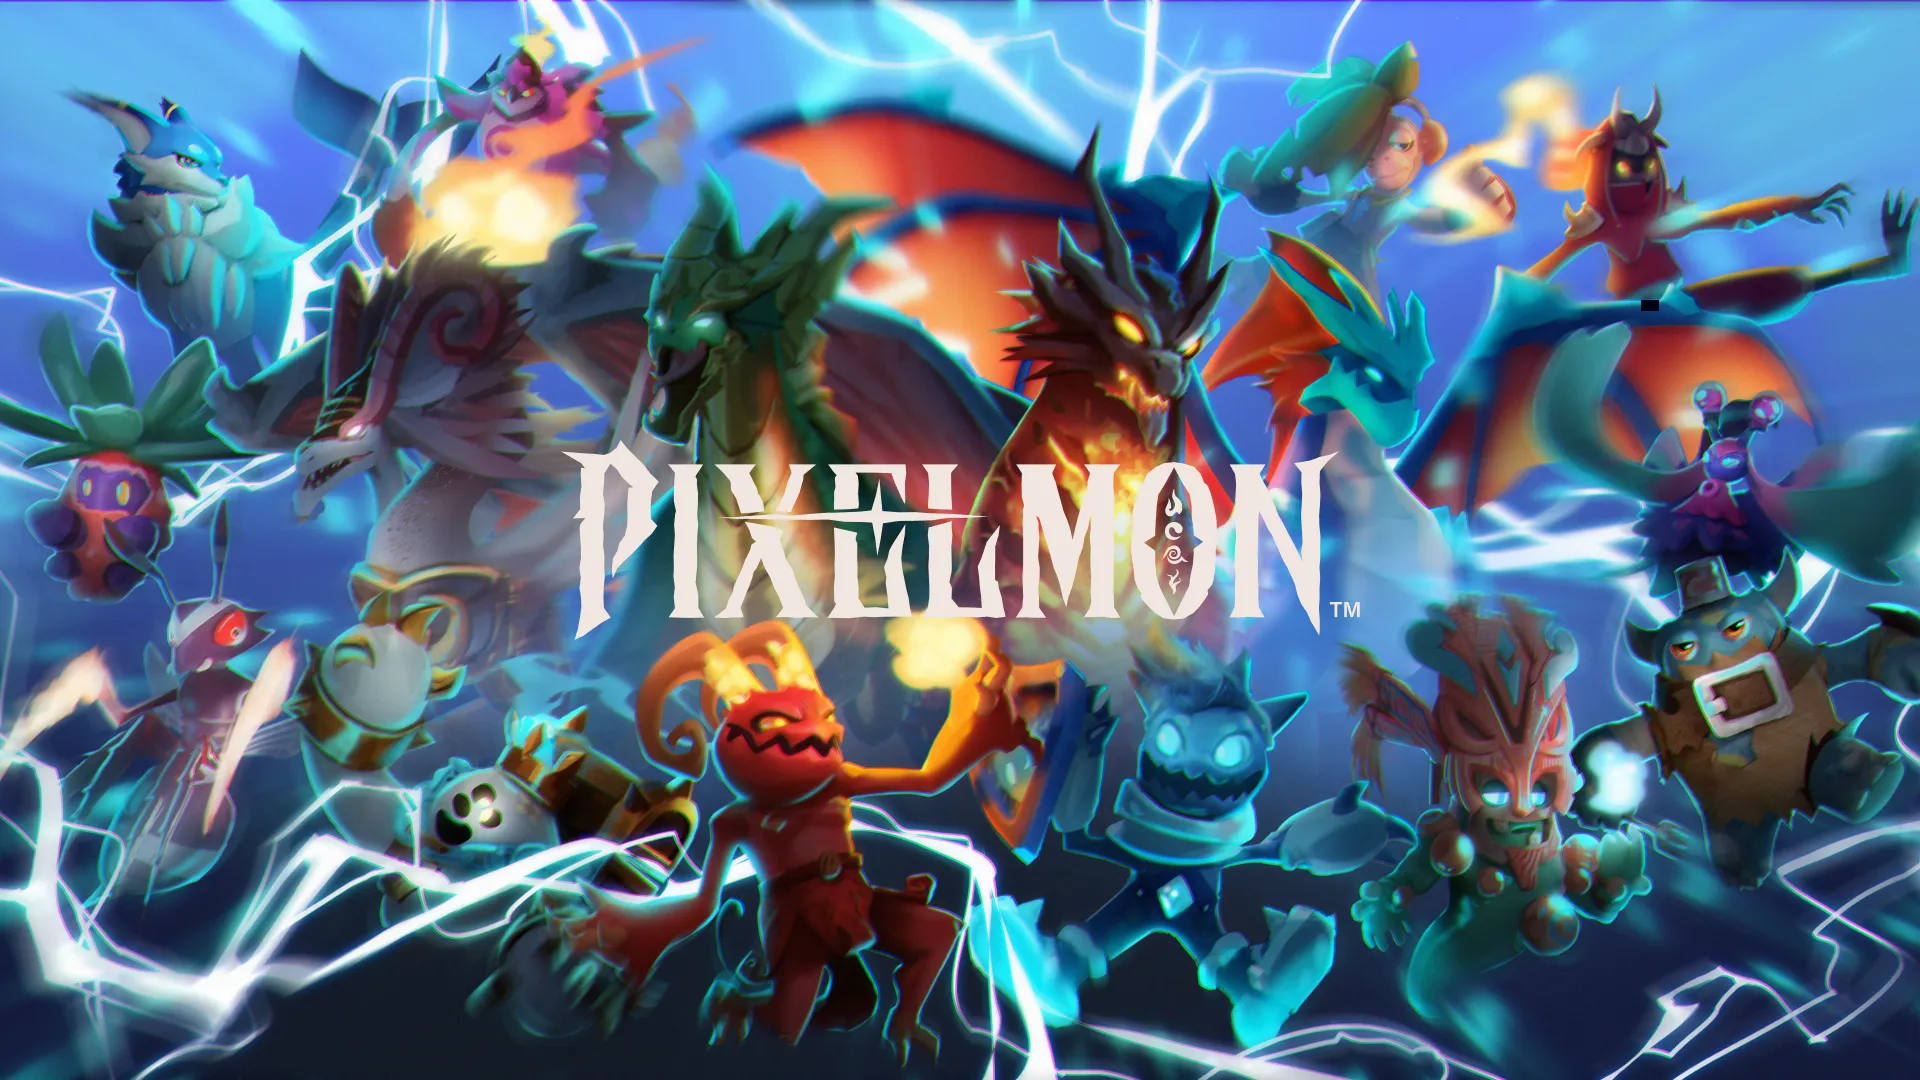 Image: Pixelmon